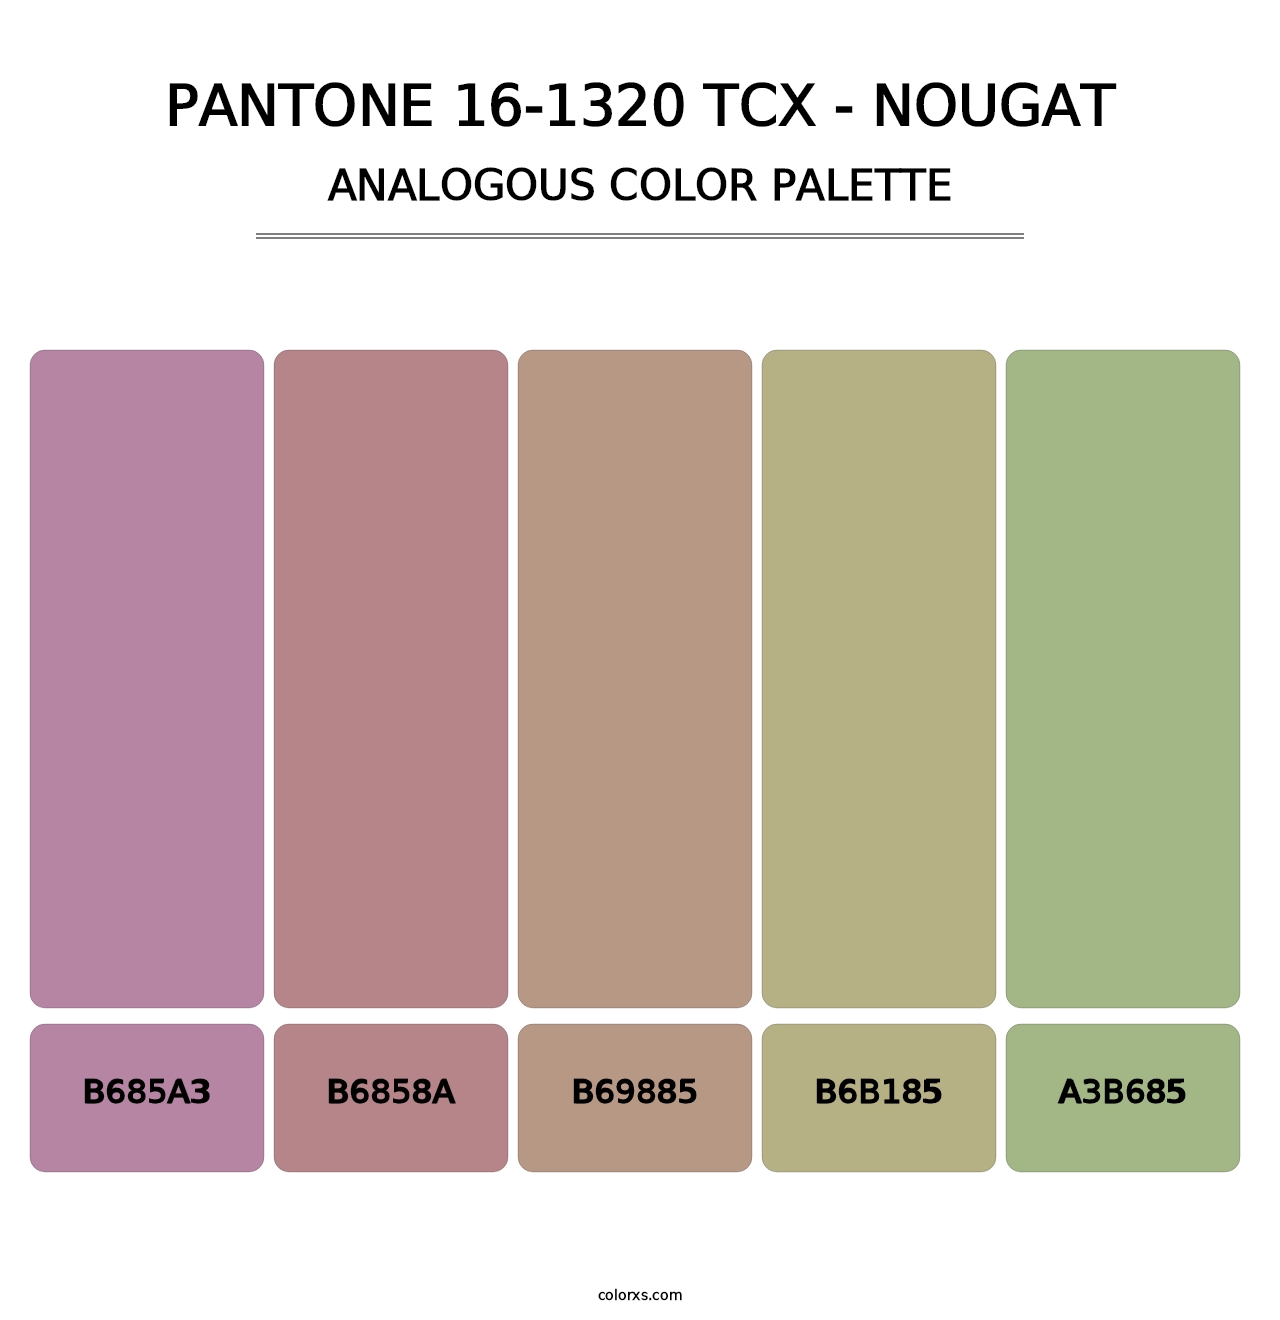 PANTONE 16-1320 TCX - Nougat - Analogous Color Palette